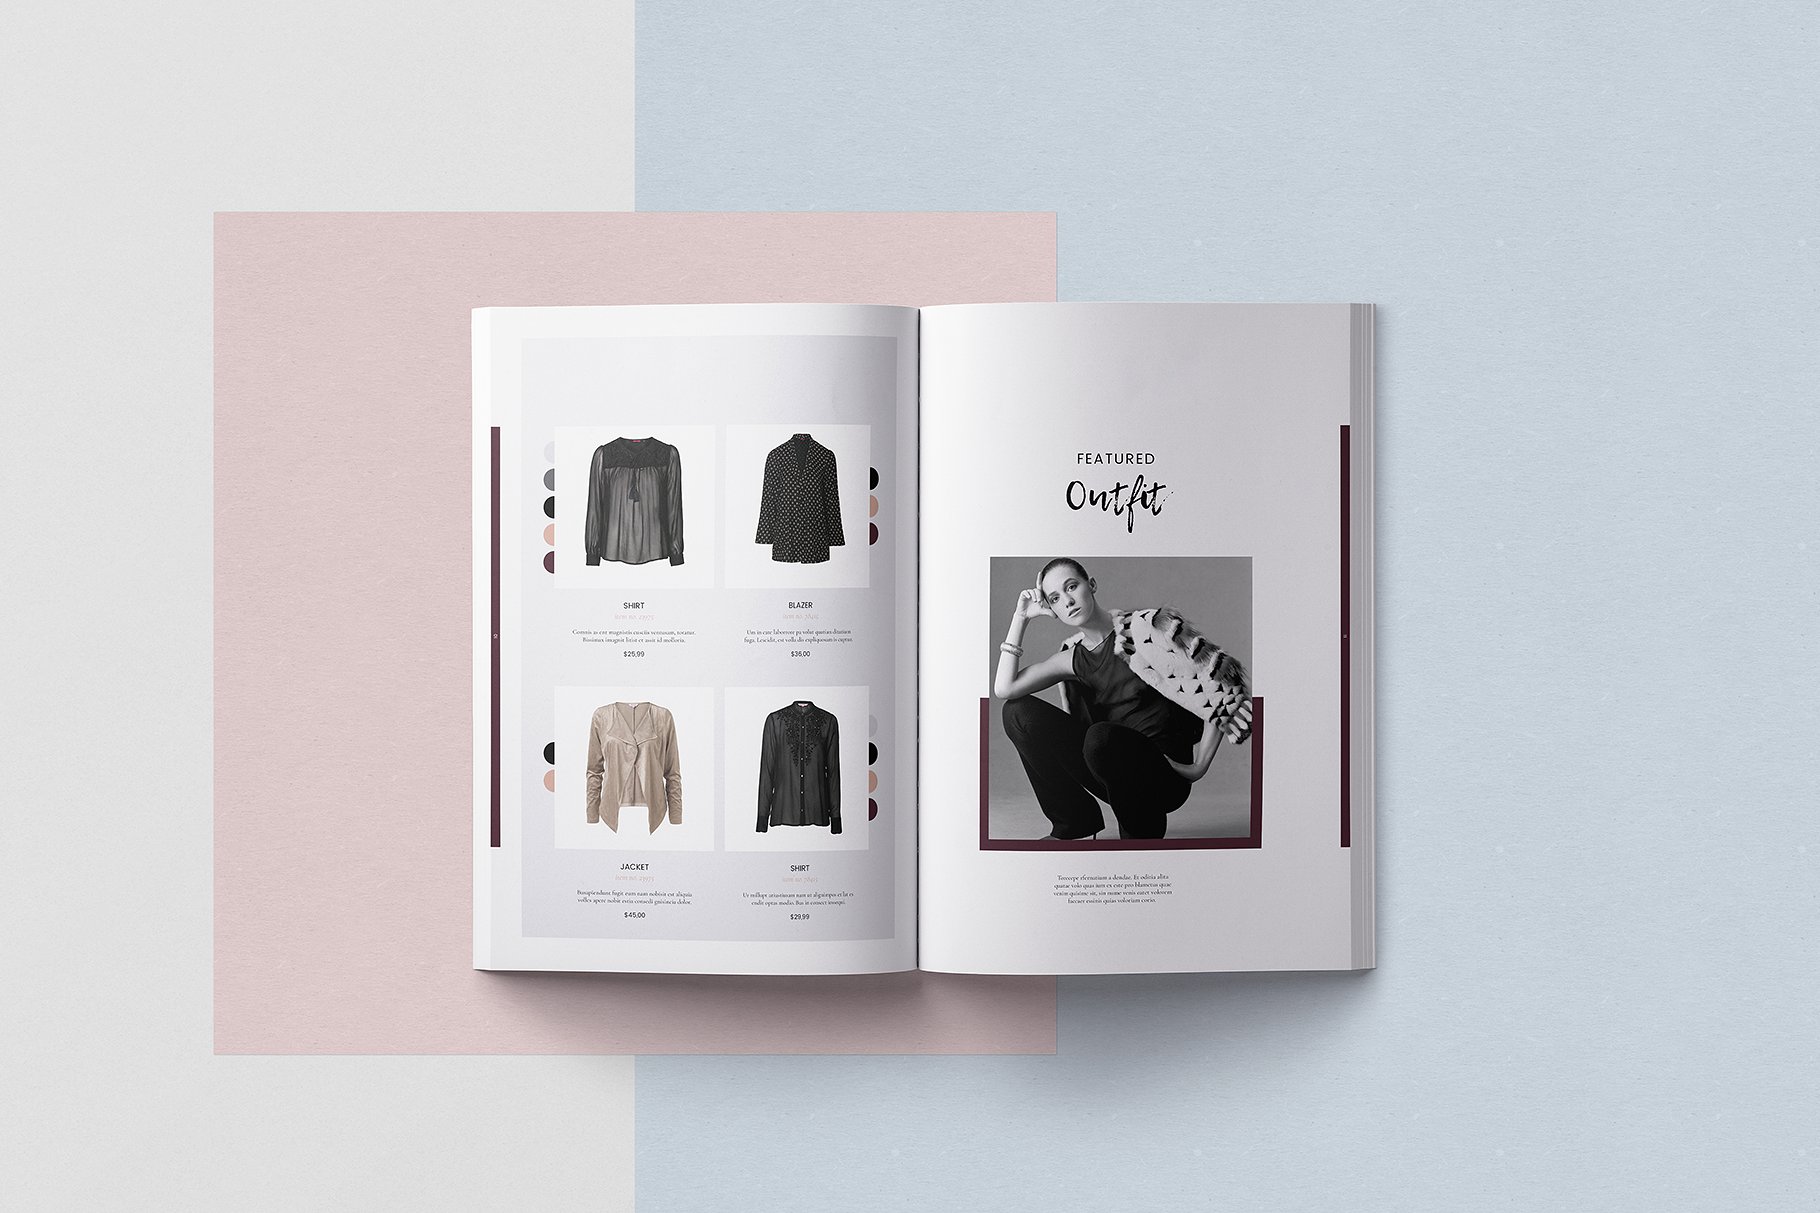 时尚优雅的女性服装A4画册模板 Modern Elegant Women’s Clothing A4 Album Template插图6